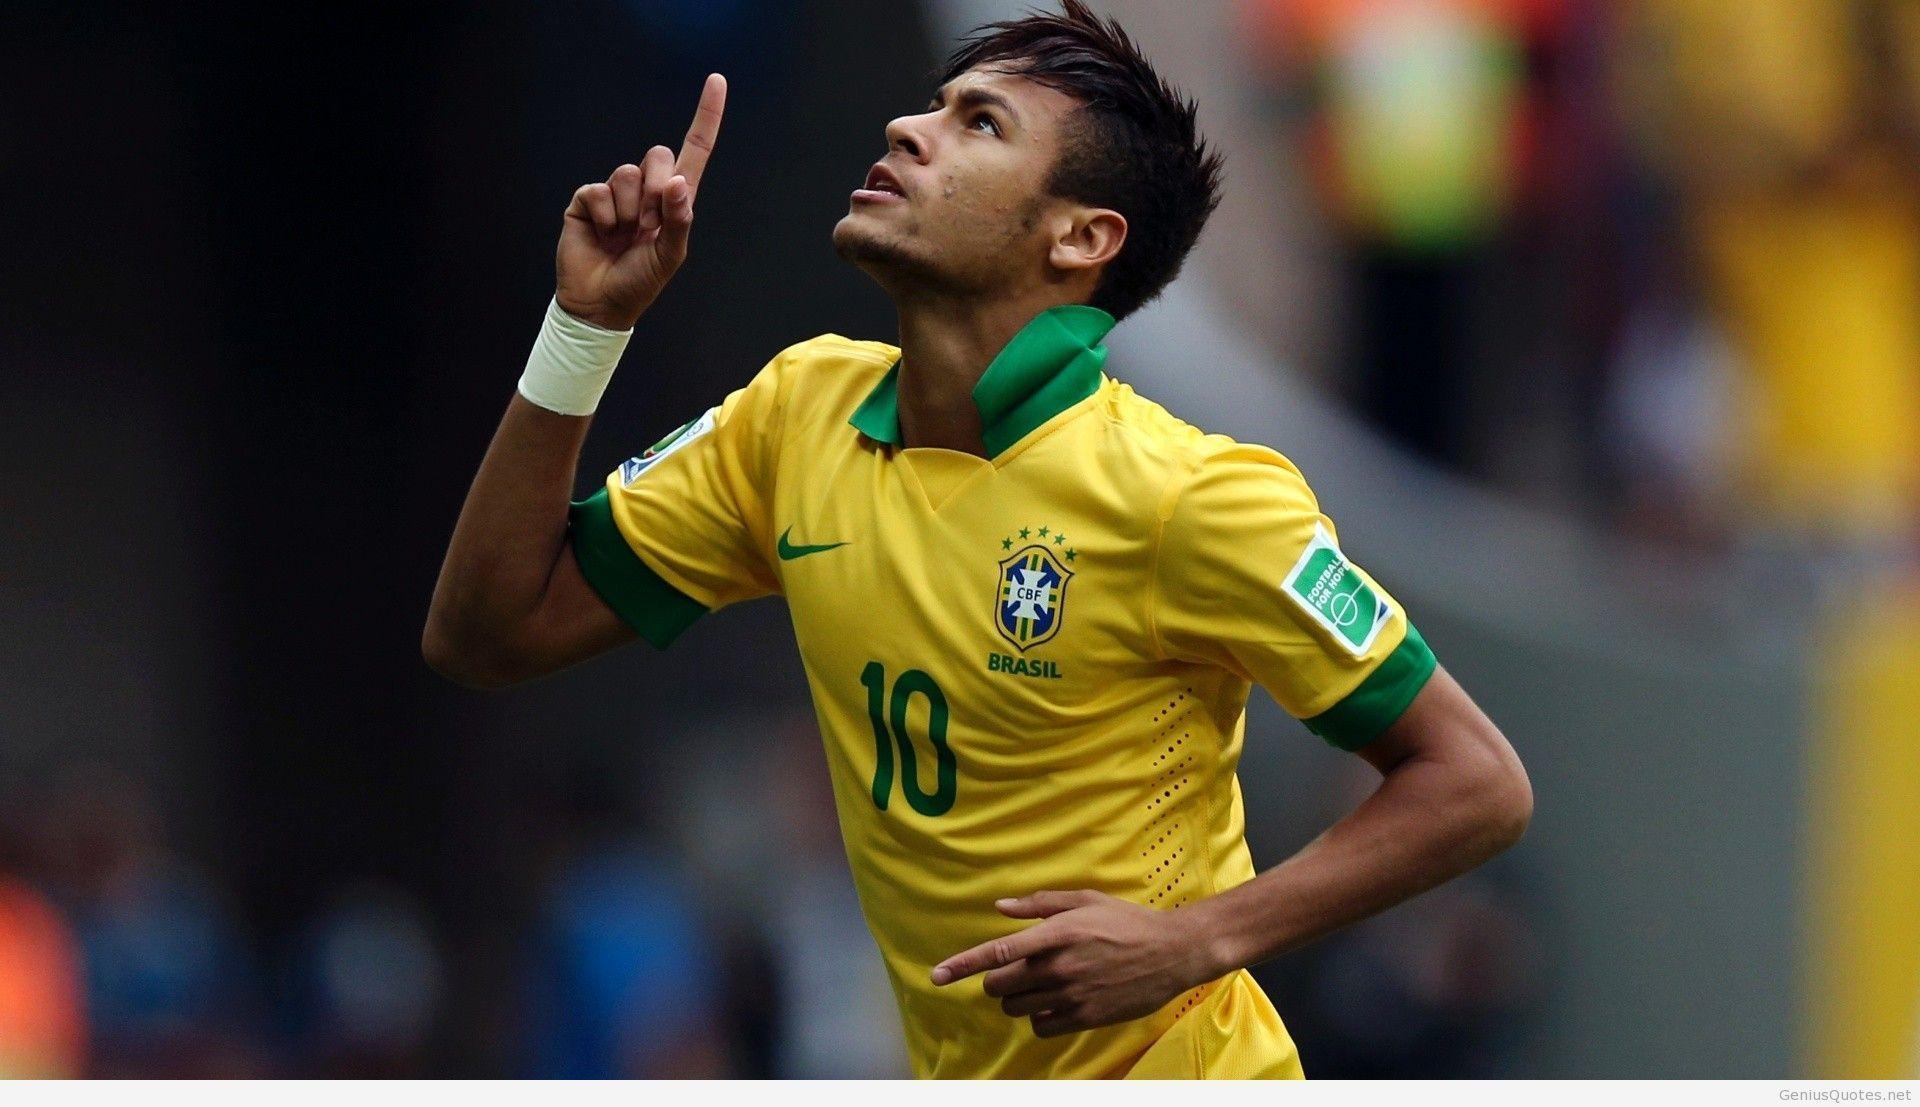 Neymar vs Messi world cup 2014 brazil wallpaper hd